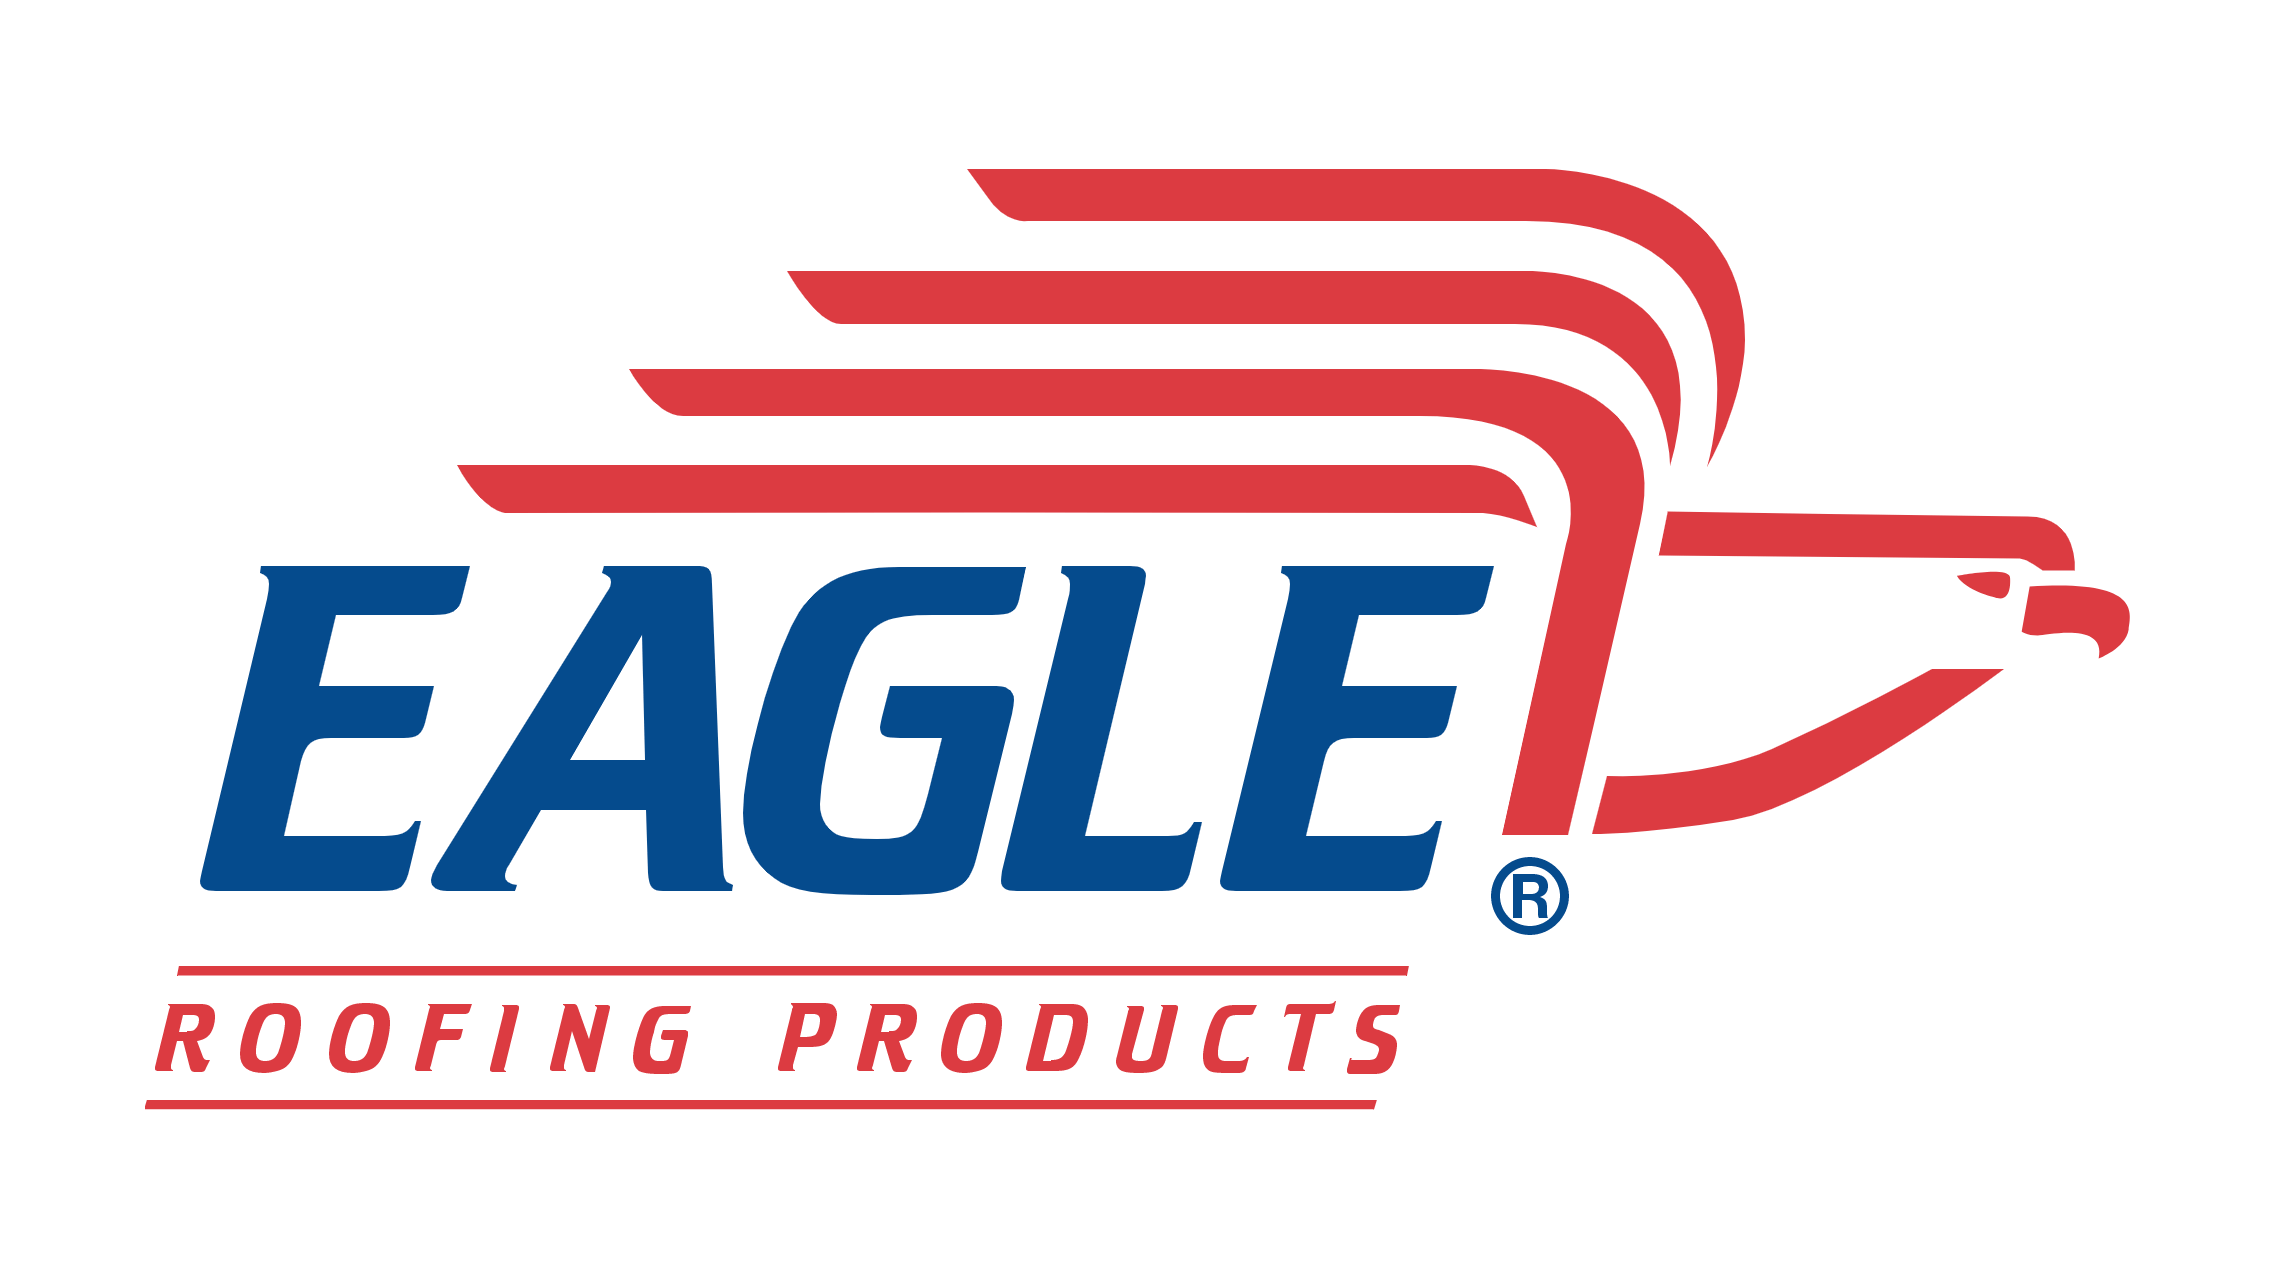 Eagle Roofing roof tile manufacturer